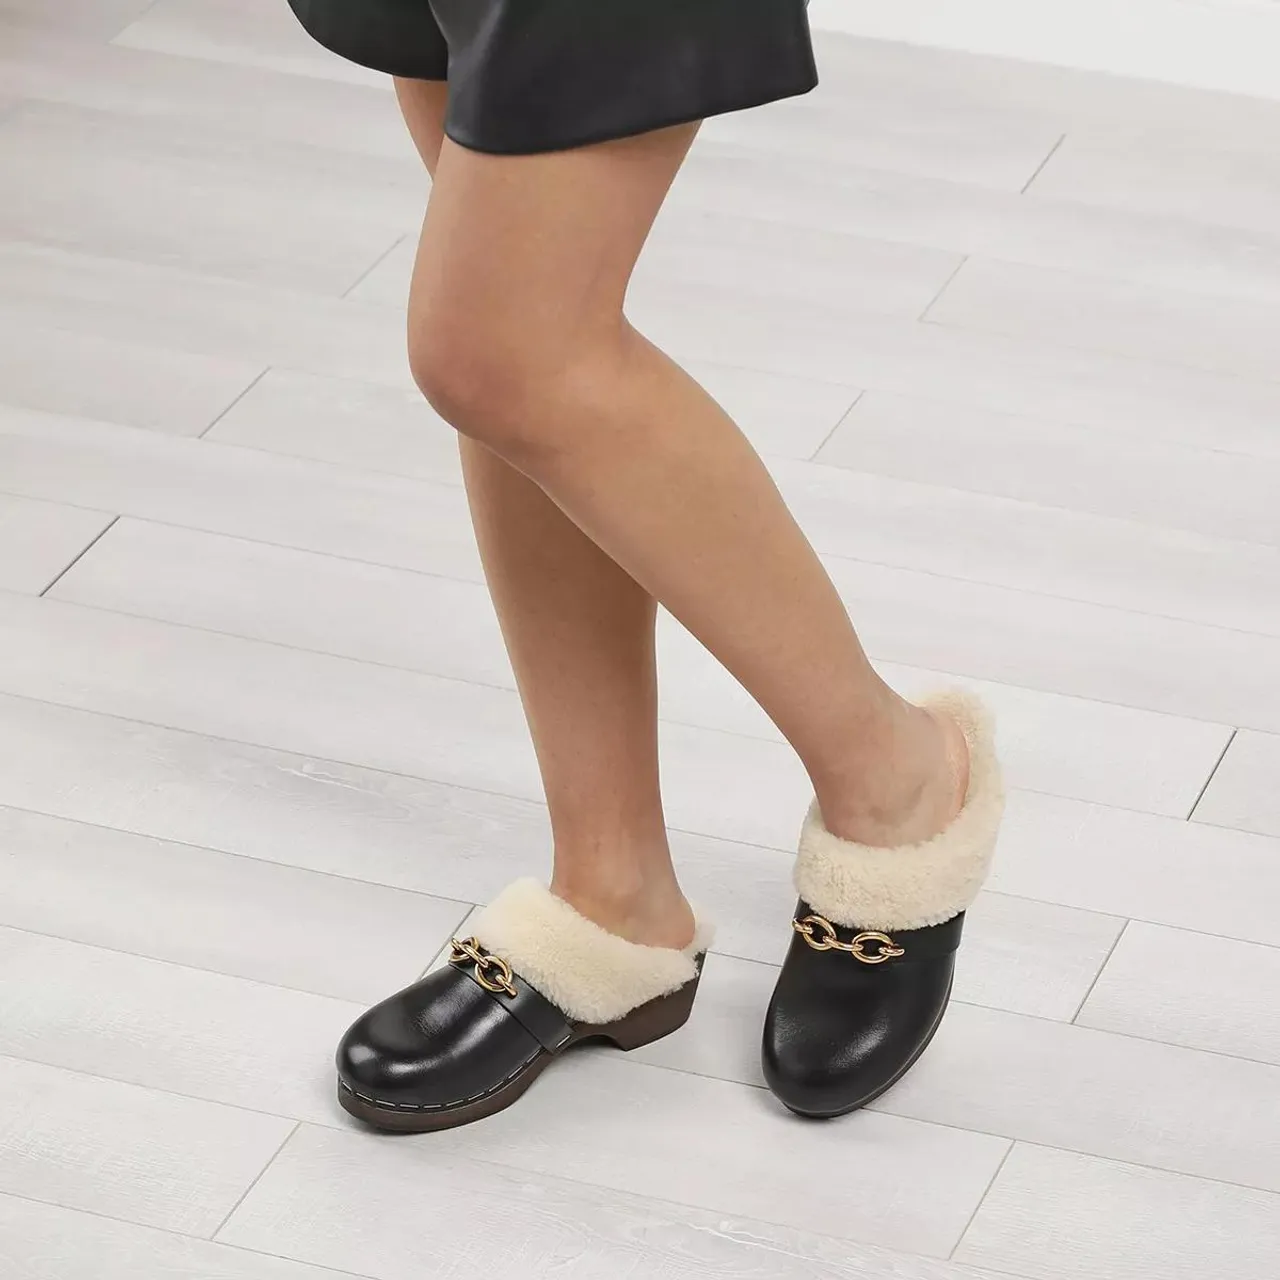 Coach Sandals - Kellie Leather Sandal - black - Sandals for ladies